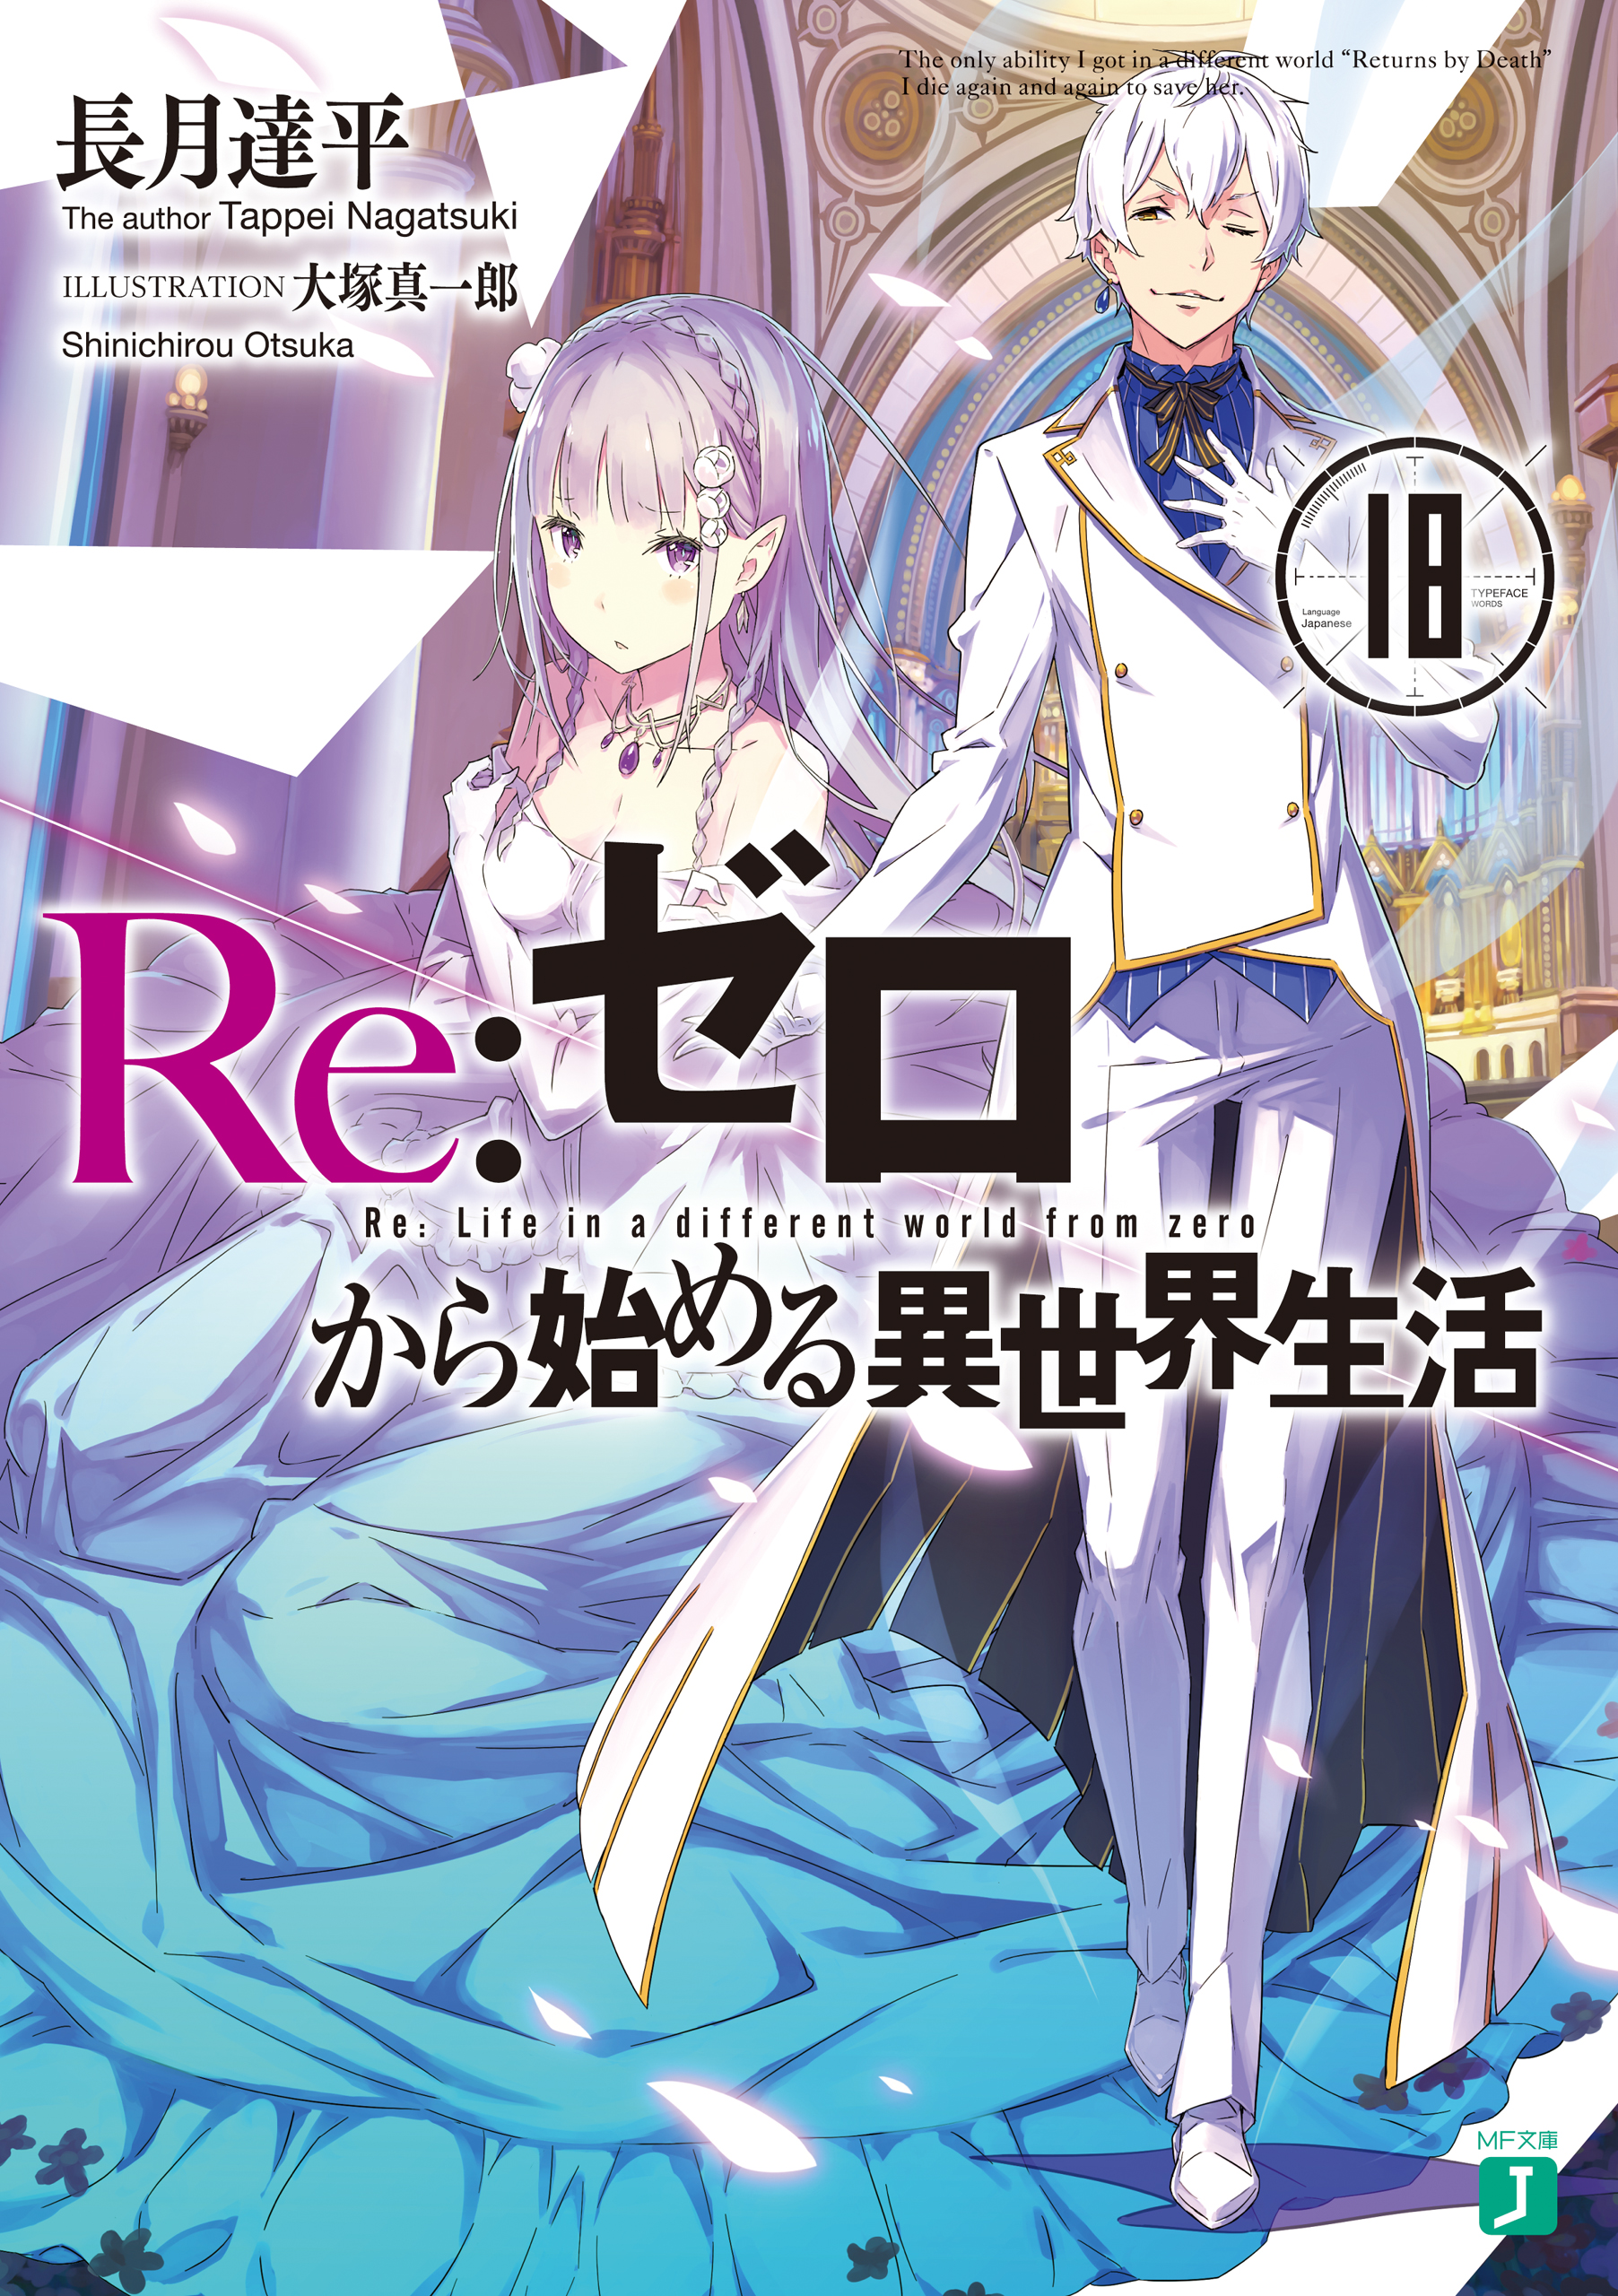 Re:Zero Light Novel Volume 18, Re:Zero Wiki